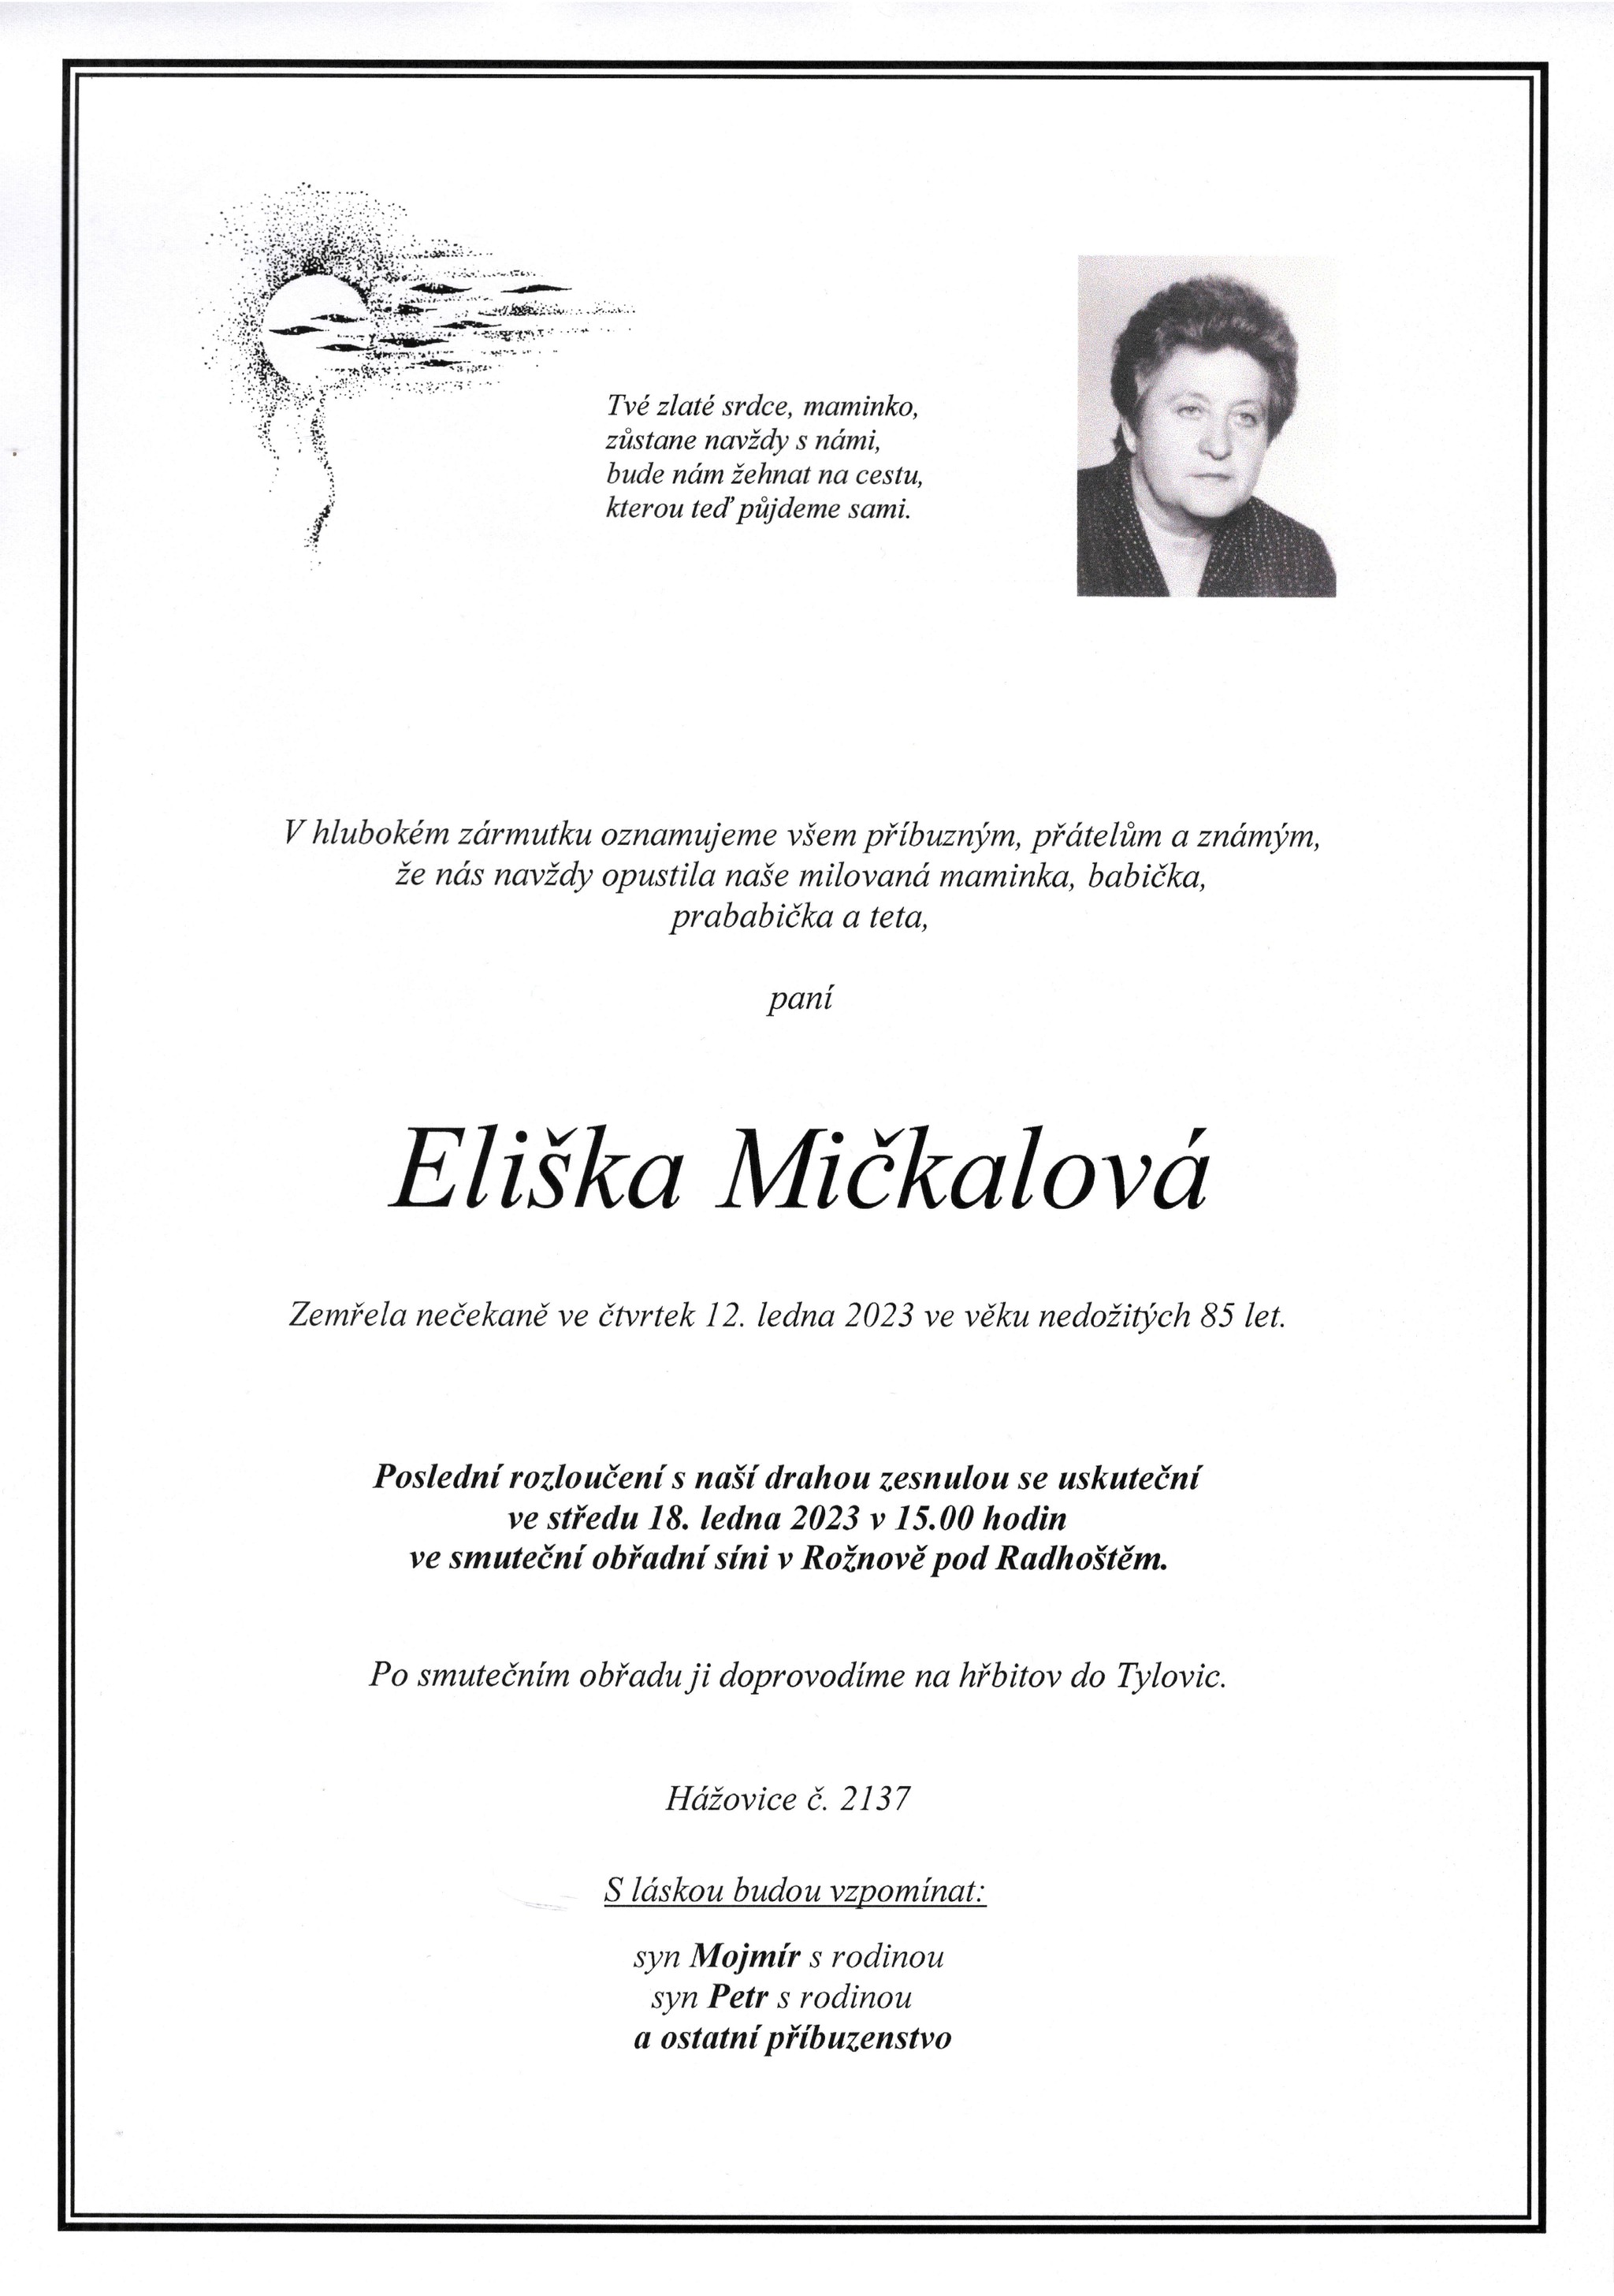 Eliška Mičkalová